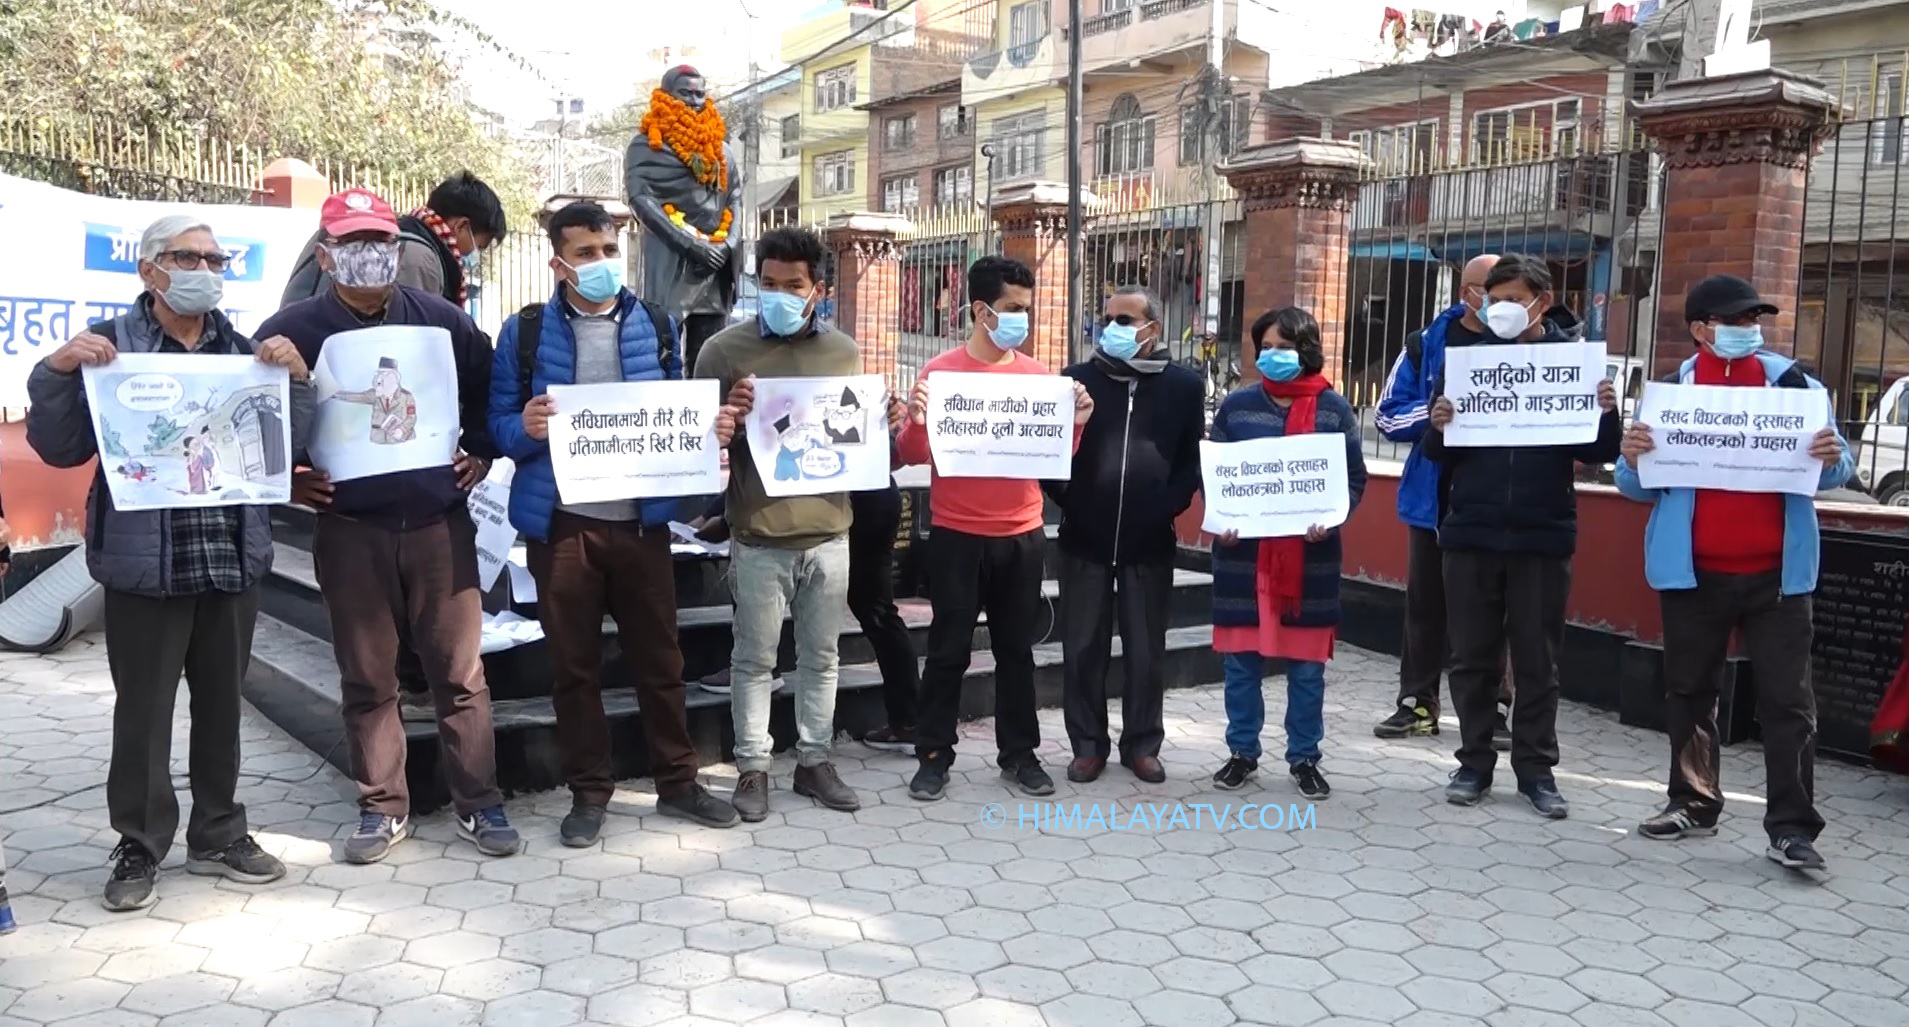 संसद विघटनविरुद्ध सहिद धर्मभक्तले बलिदान दिएको स्थानमा नागरिक समाजको प्रदर्शन